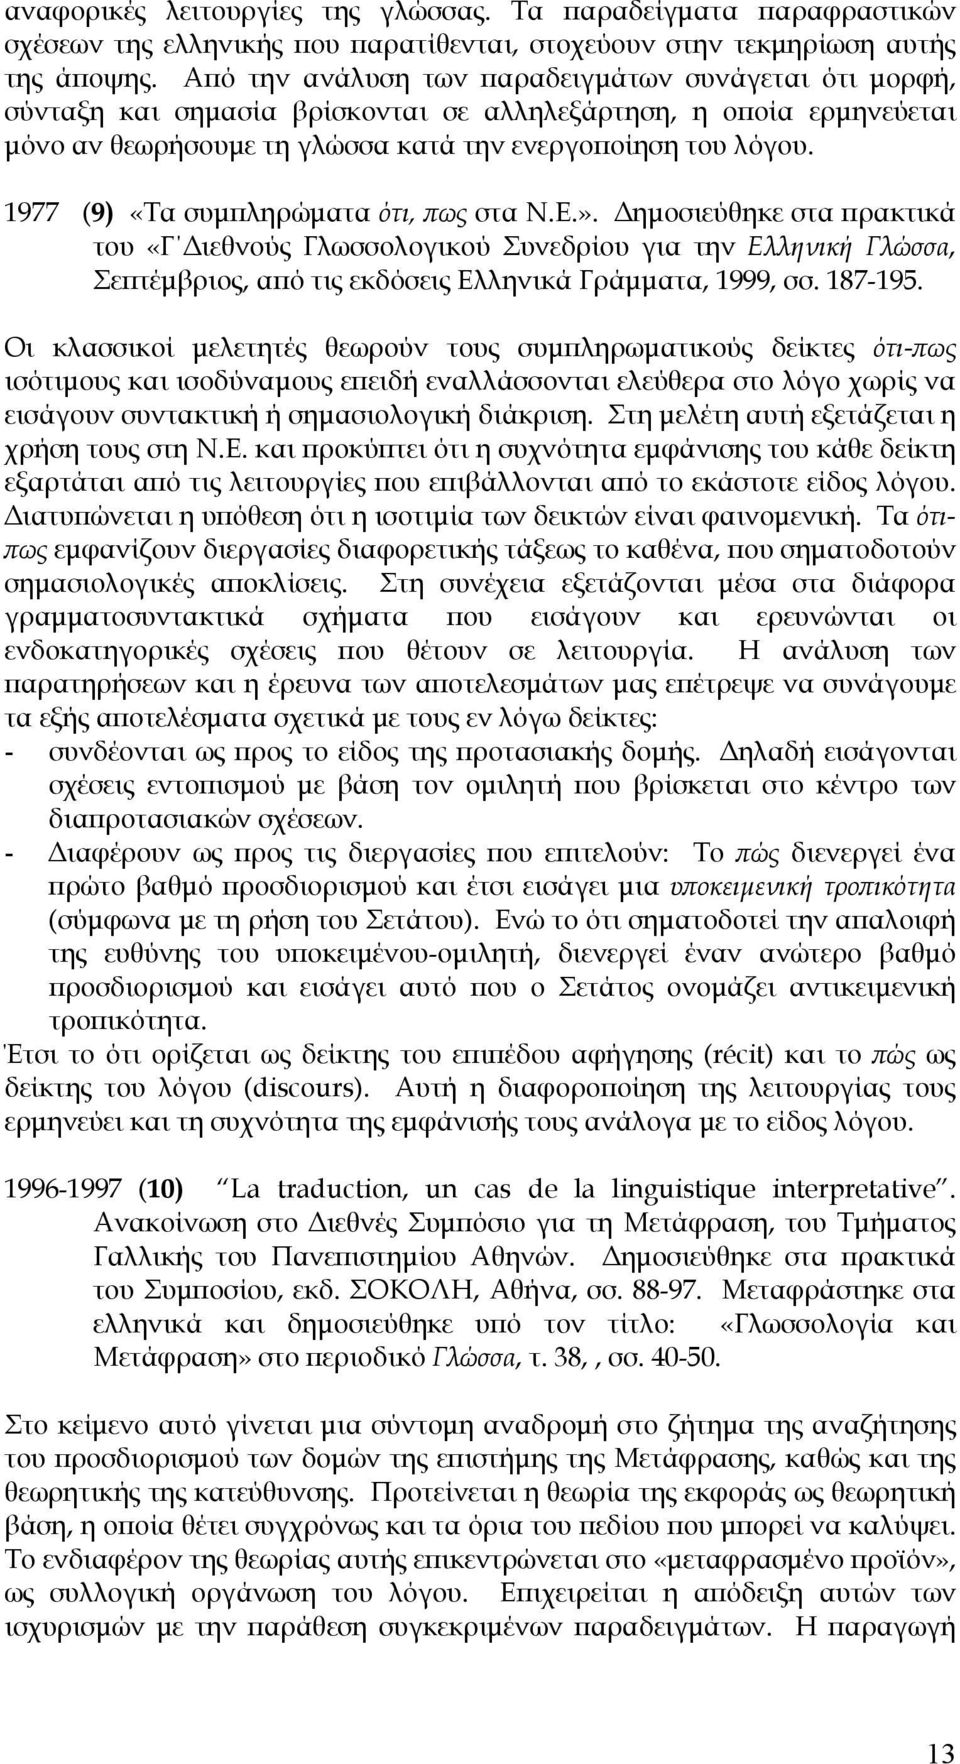 1977 (9) «Τα συμπληρώματα ότι, πως στα Ν.Ε.». Δημοσιεύθηκε στα πρακτικά του «Γ Διεθνούς Γλωσσολογικού Συνεδρίου για την Ελληνική Γλώσσα, Σεπτέμβριος, από τις εκδόσεις Ελληνικά Γράμματα, 1999, σσ.